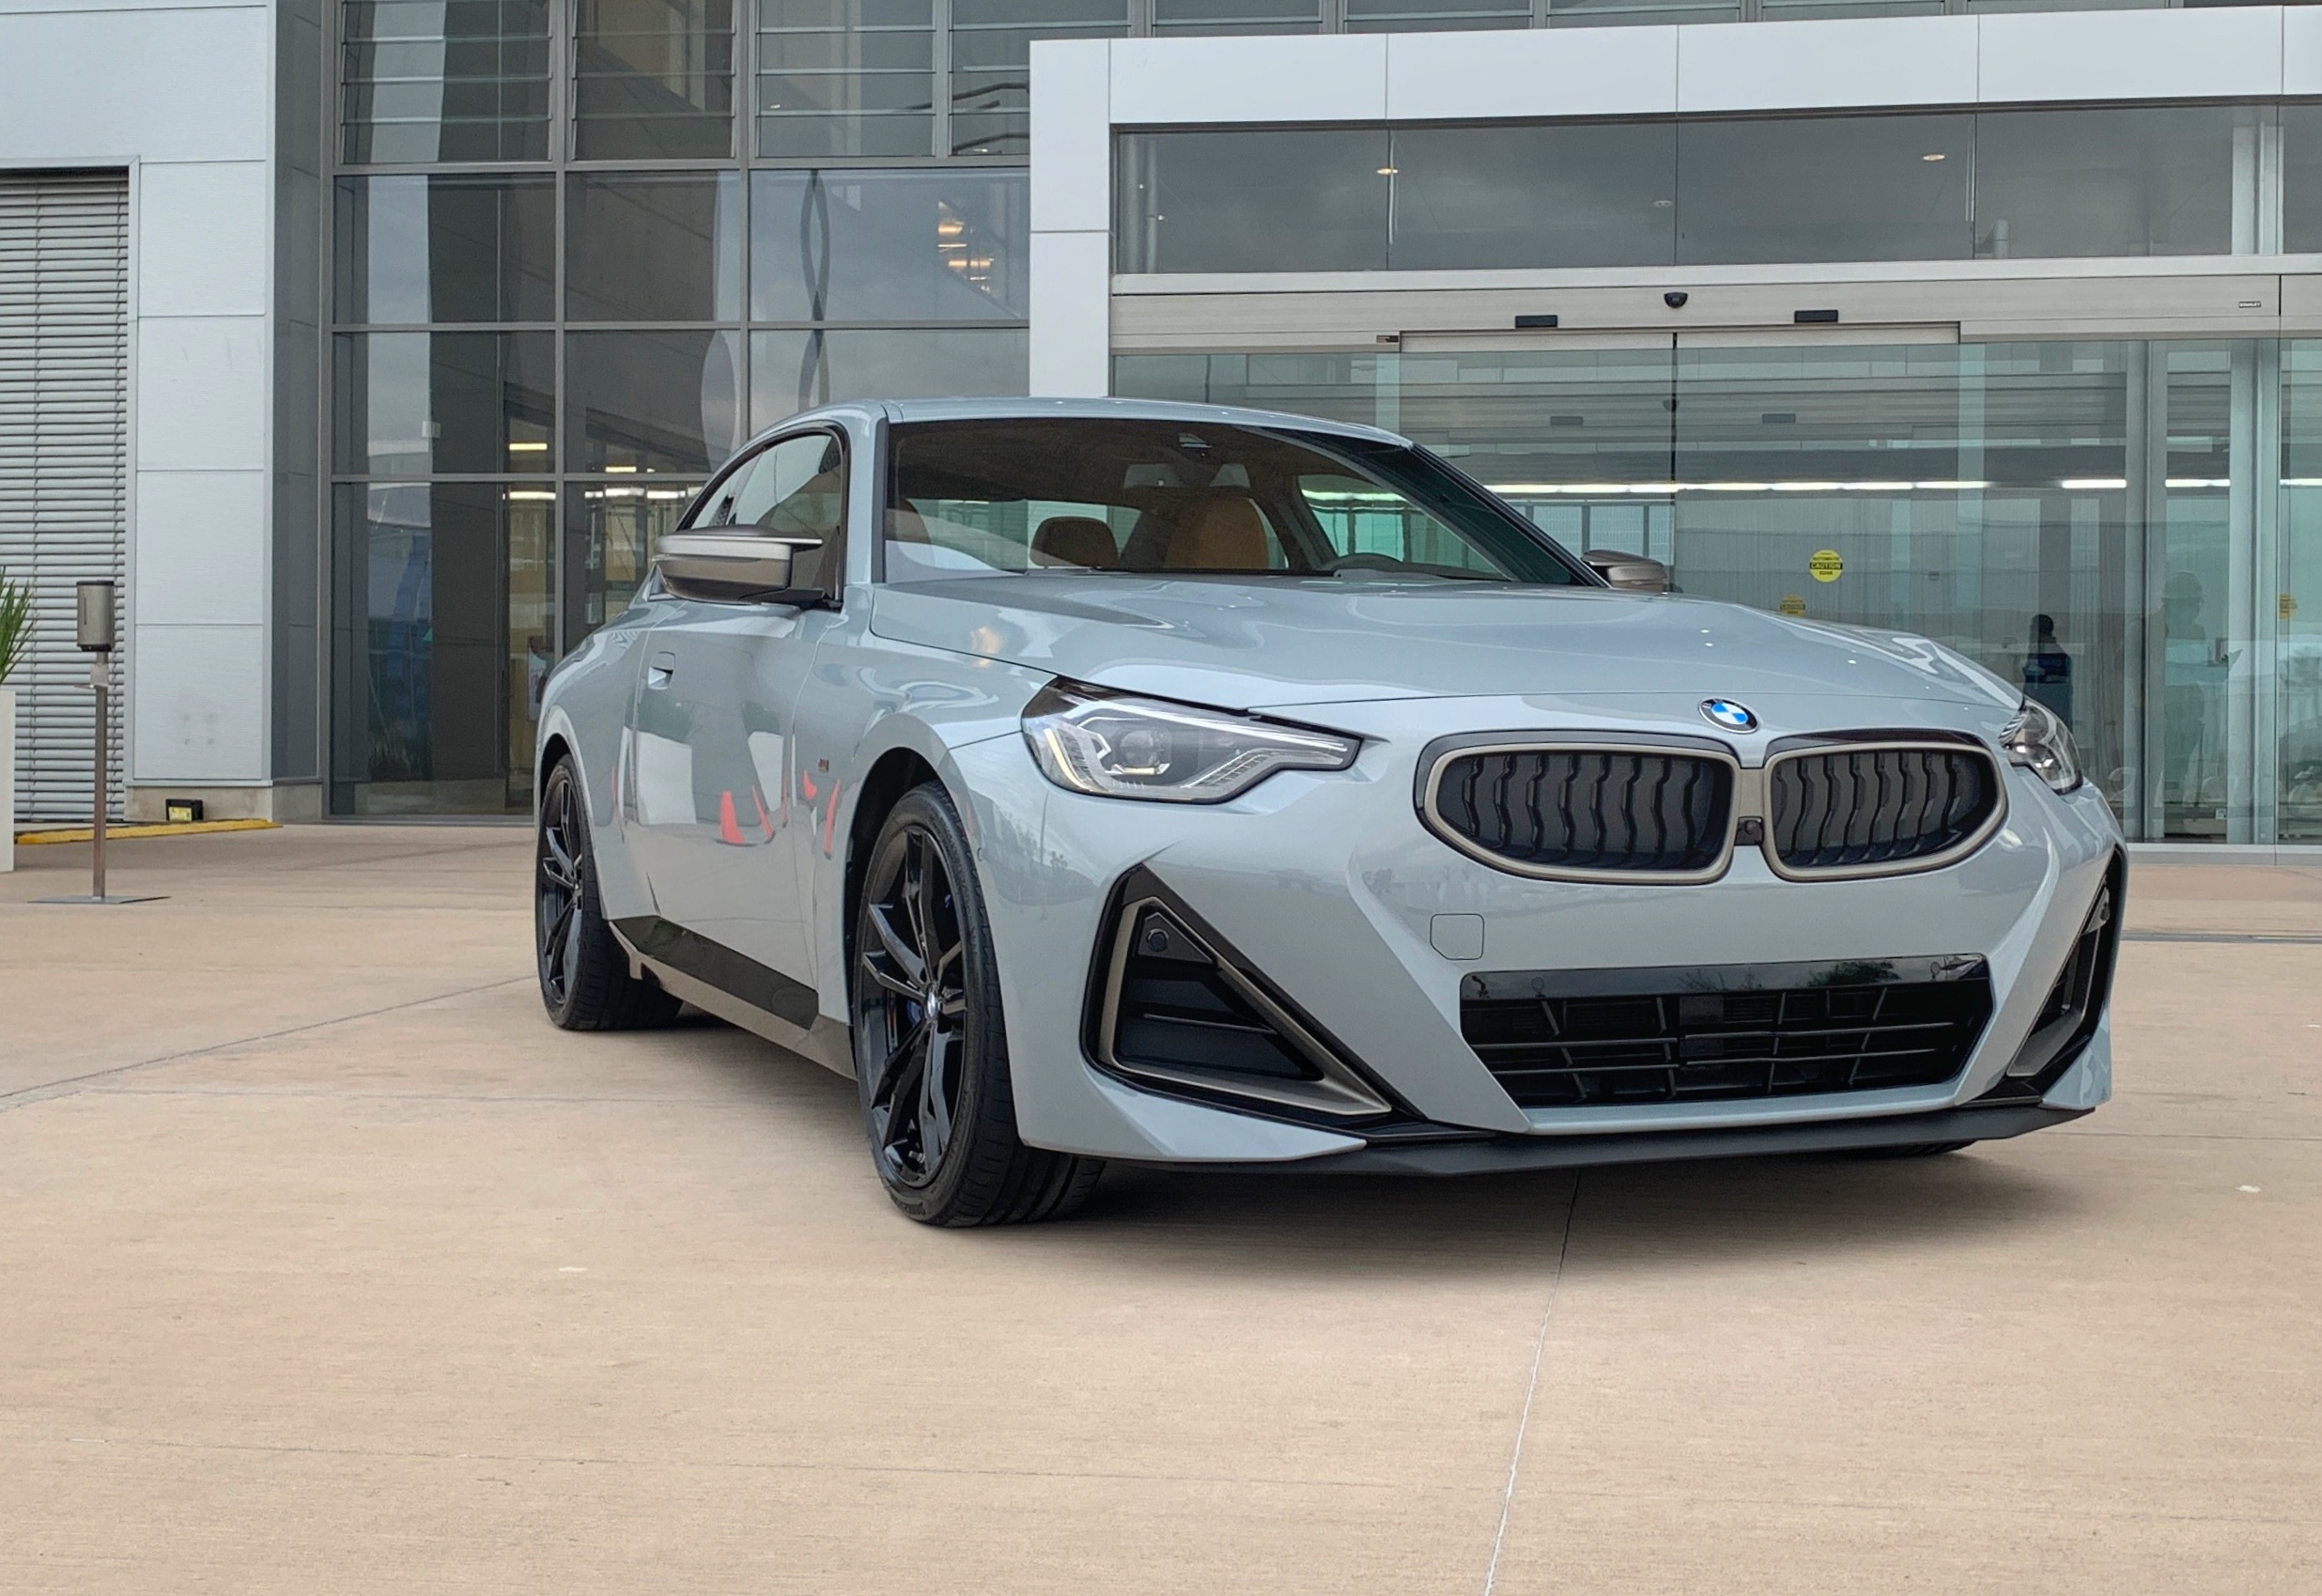 BMW arranca con la producción del nuevo Serie 2 Coupé en México